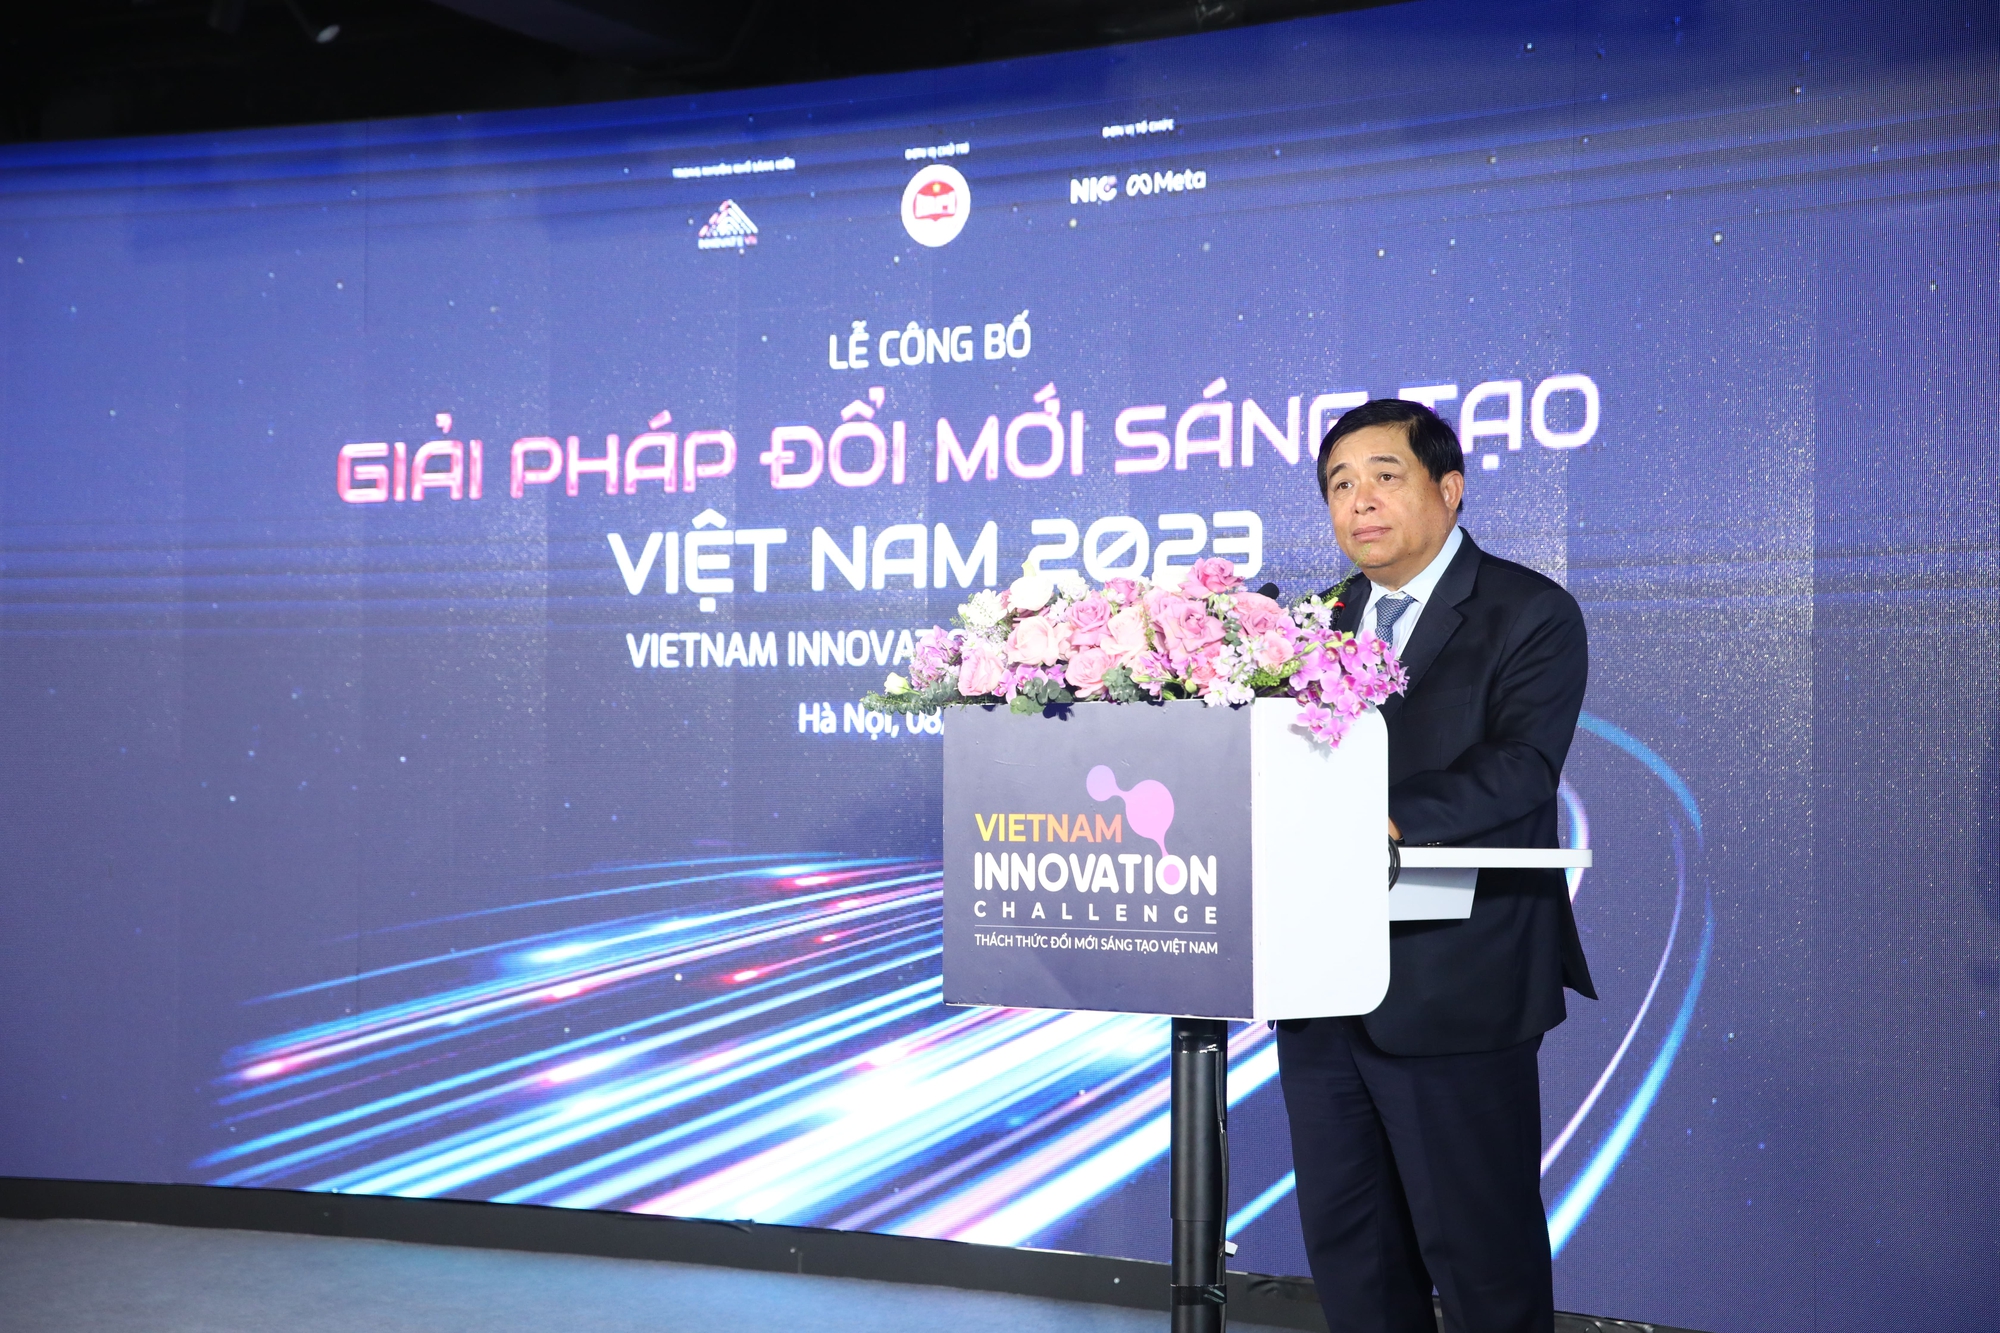 Giải pháp Made by CMC được vinh danh Giải pháp đổi mới sáng tạo Việt Nam 2023 - Ảnh 1.